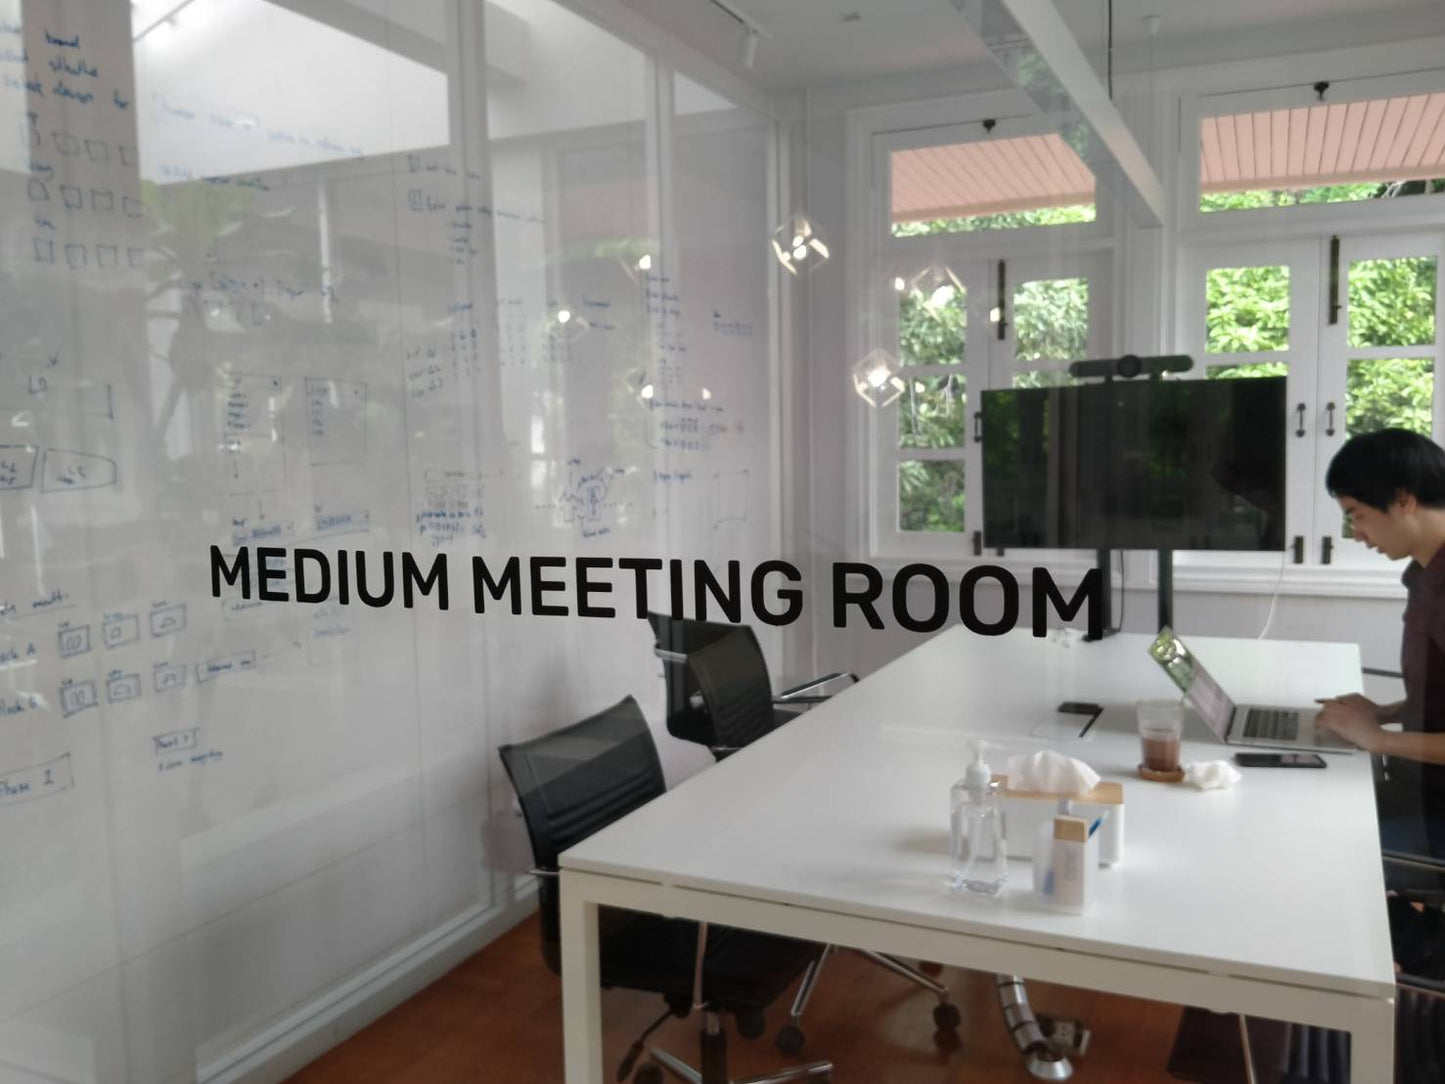 ป้ายหน้าห้อง ป้ายห้องประชุม ป้ายแผนก - Octopus Media Solutions